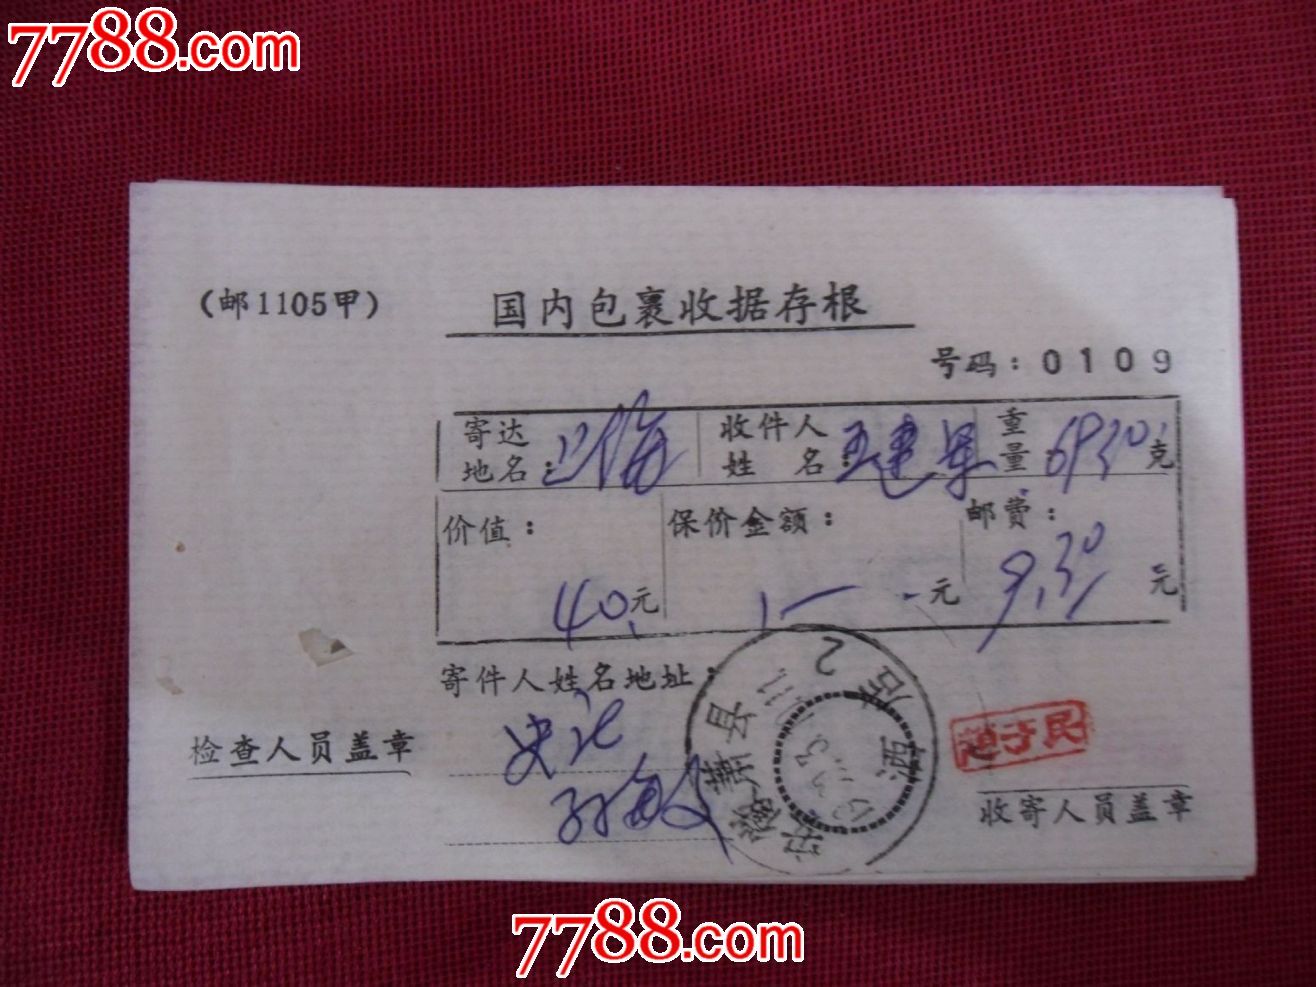 (1105甲)盖安徽萧县酒店戳国内包裹收据存根